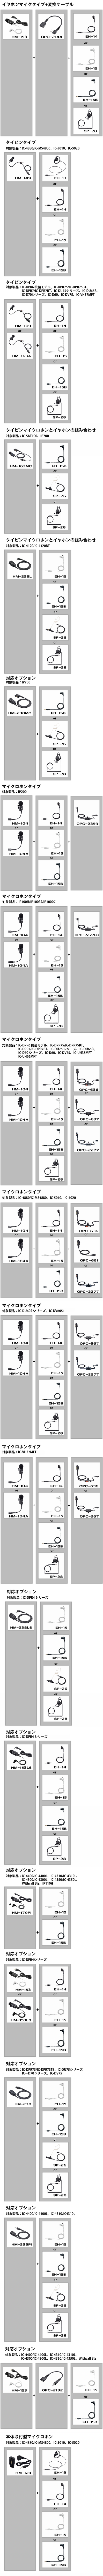 EH-15B カナル型イヤホン ブラック アイコム 【プラグ径2.5φ/ネコポス】